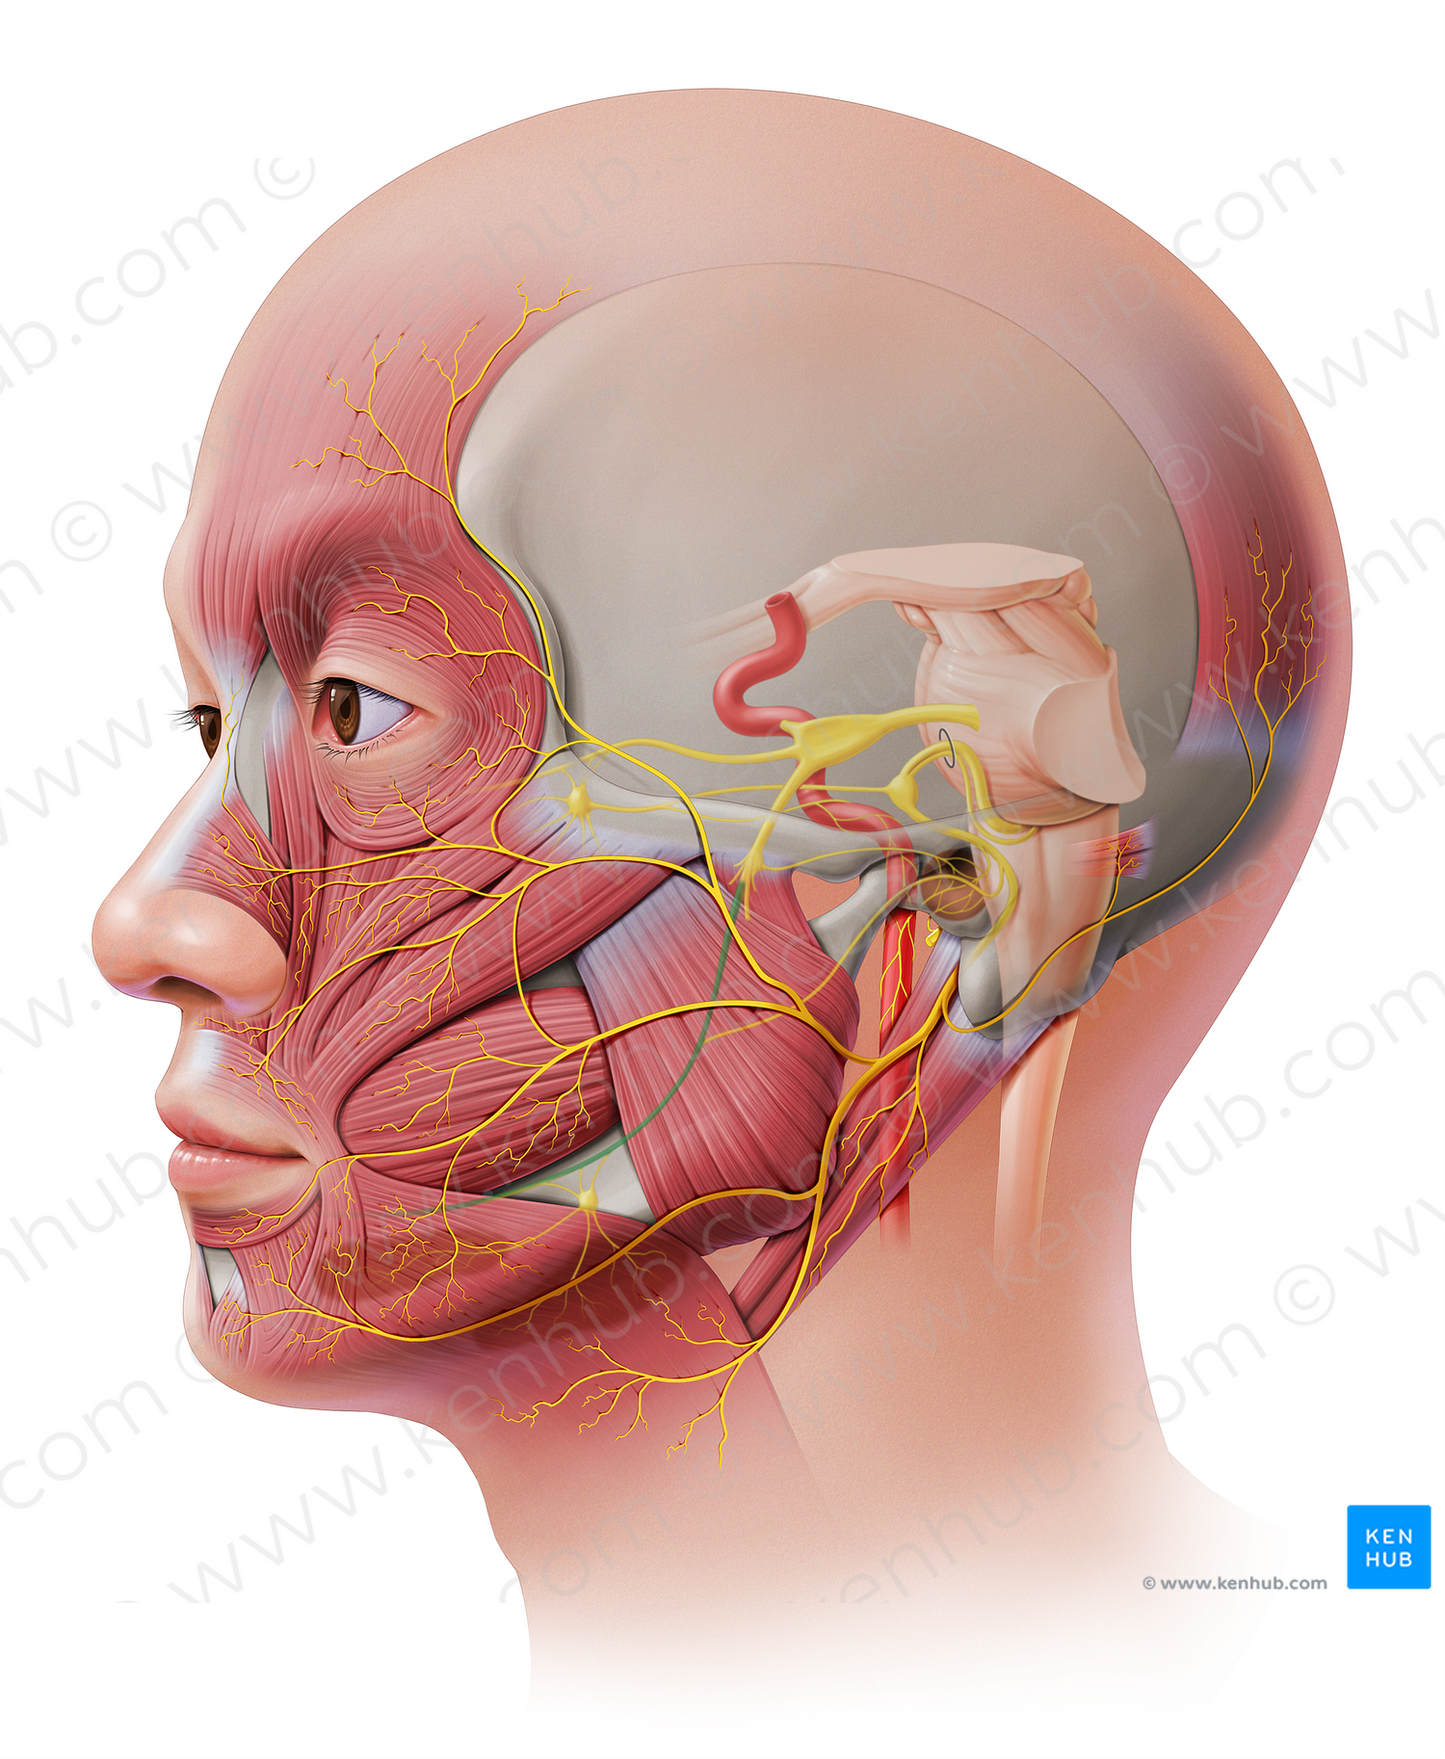 Lingual nerve (#20666)